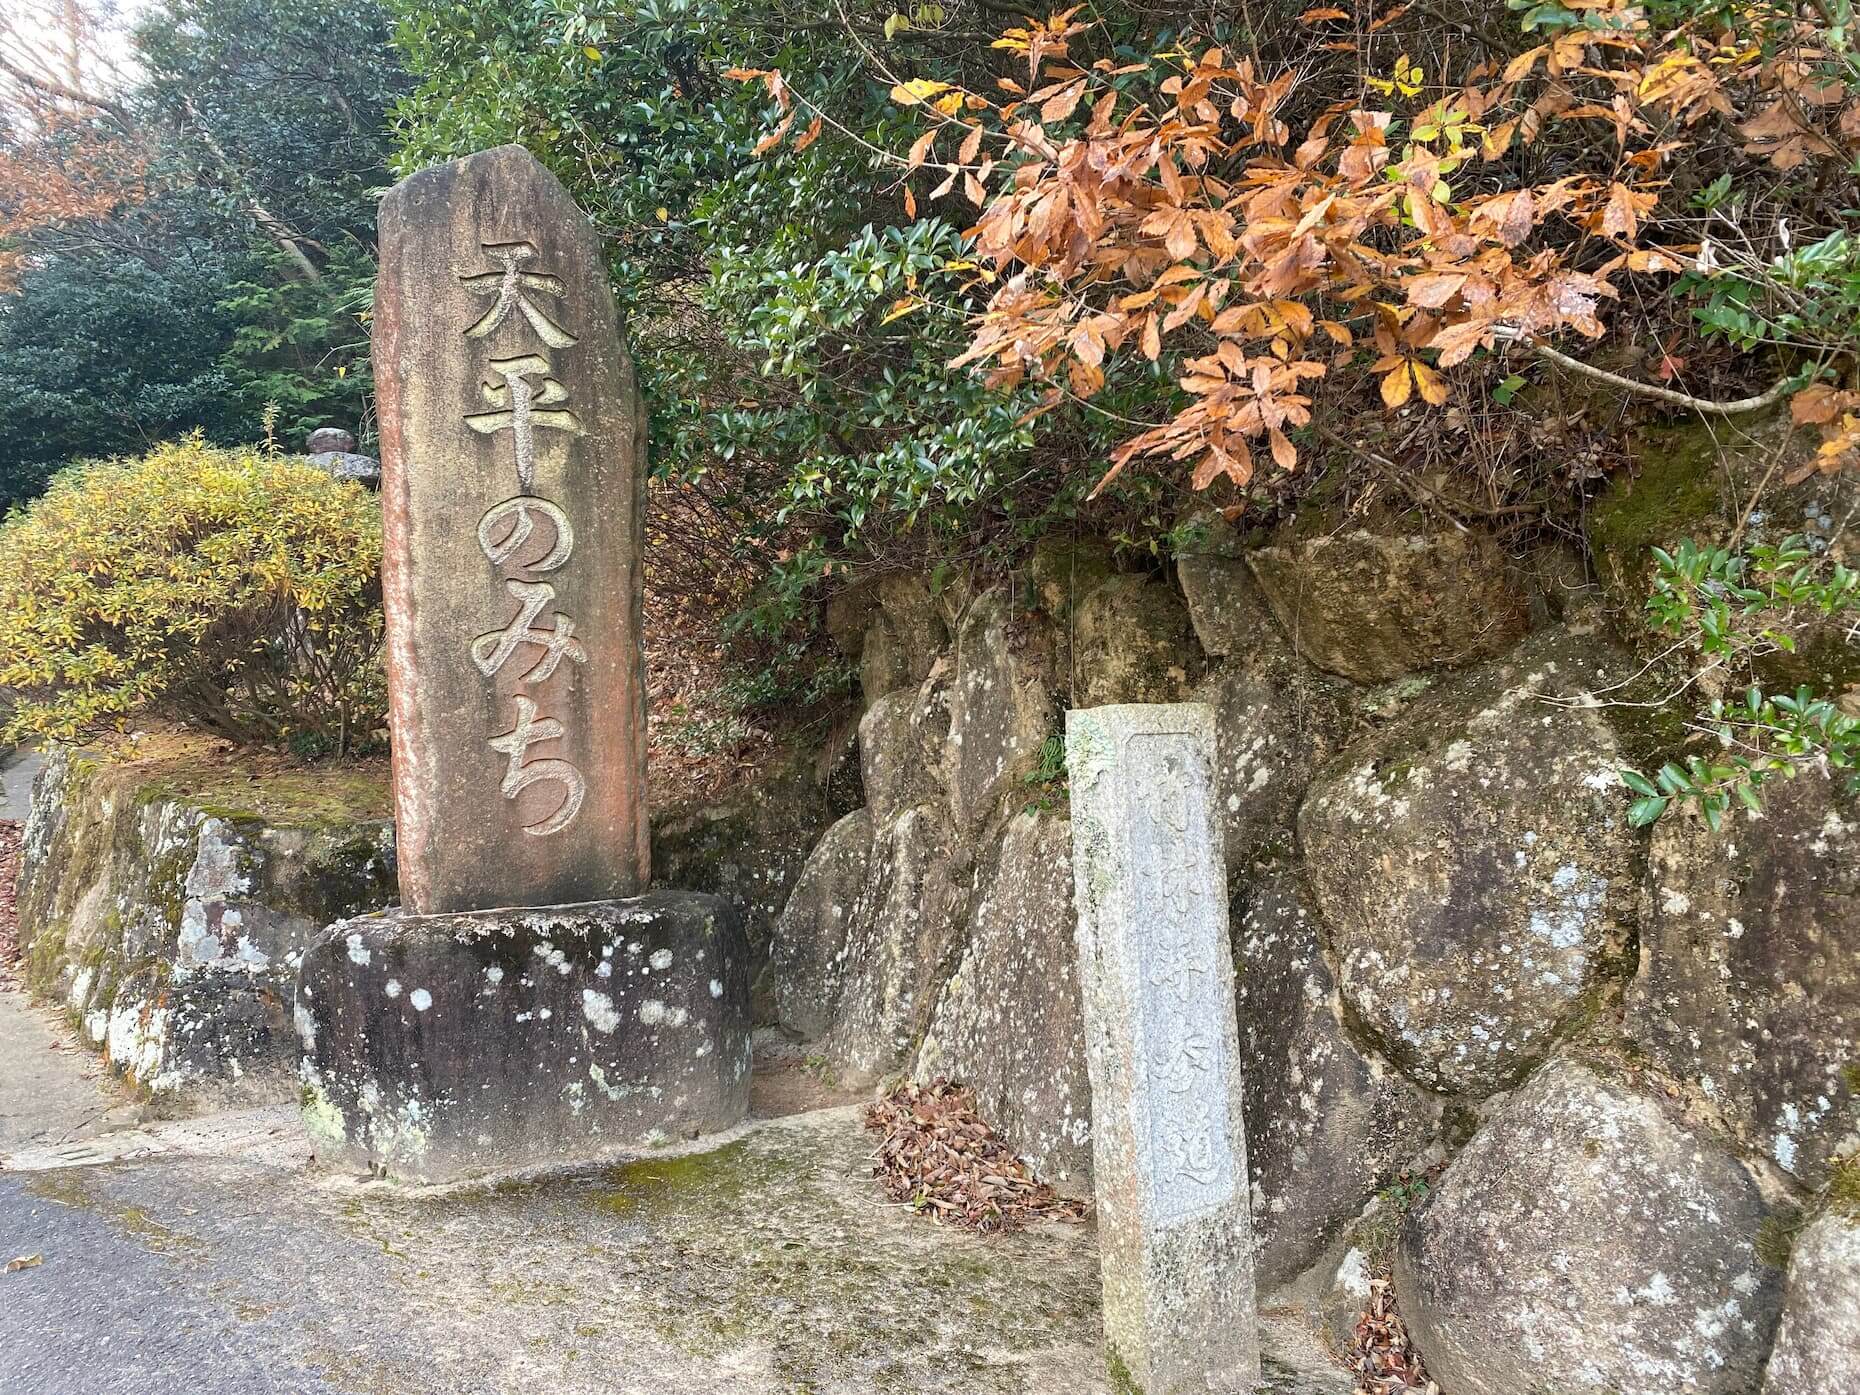 「竹林寺参道」と「天平のみち」と彫られた石柱があった